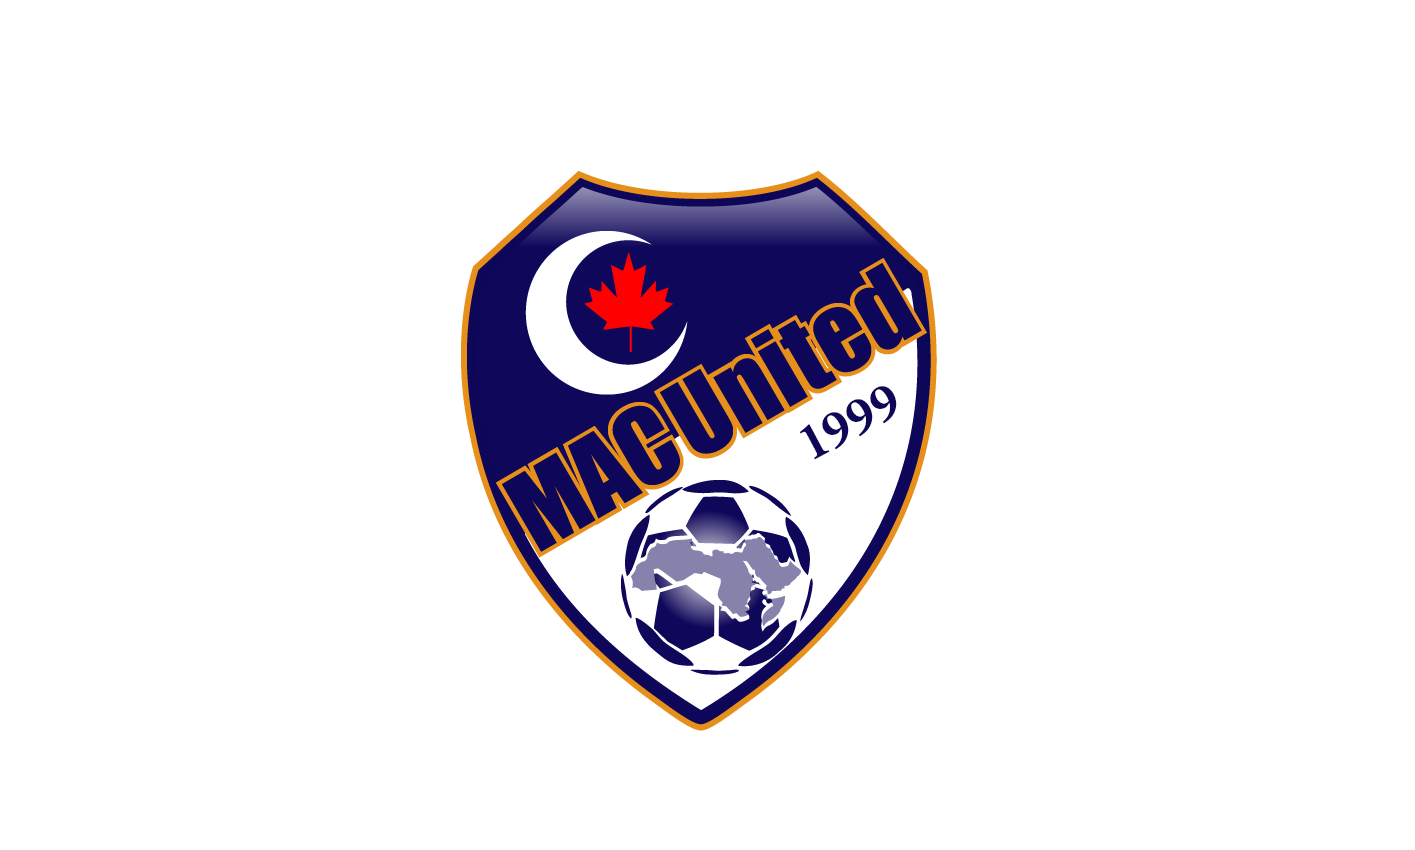 MAC United Soccer Club